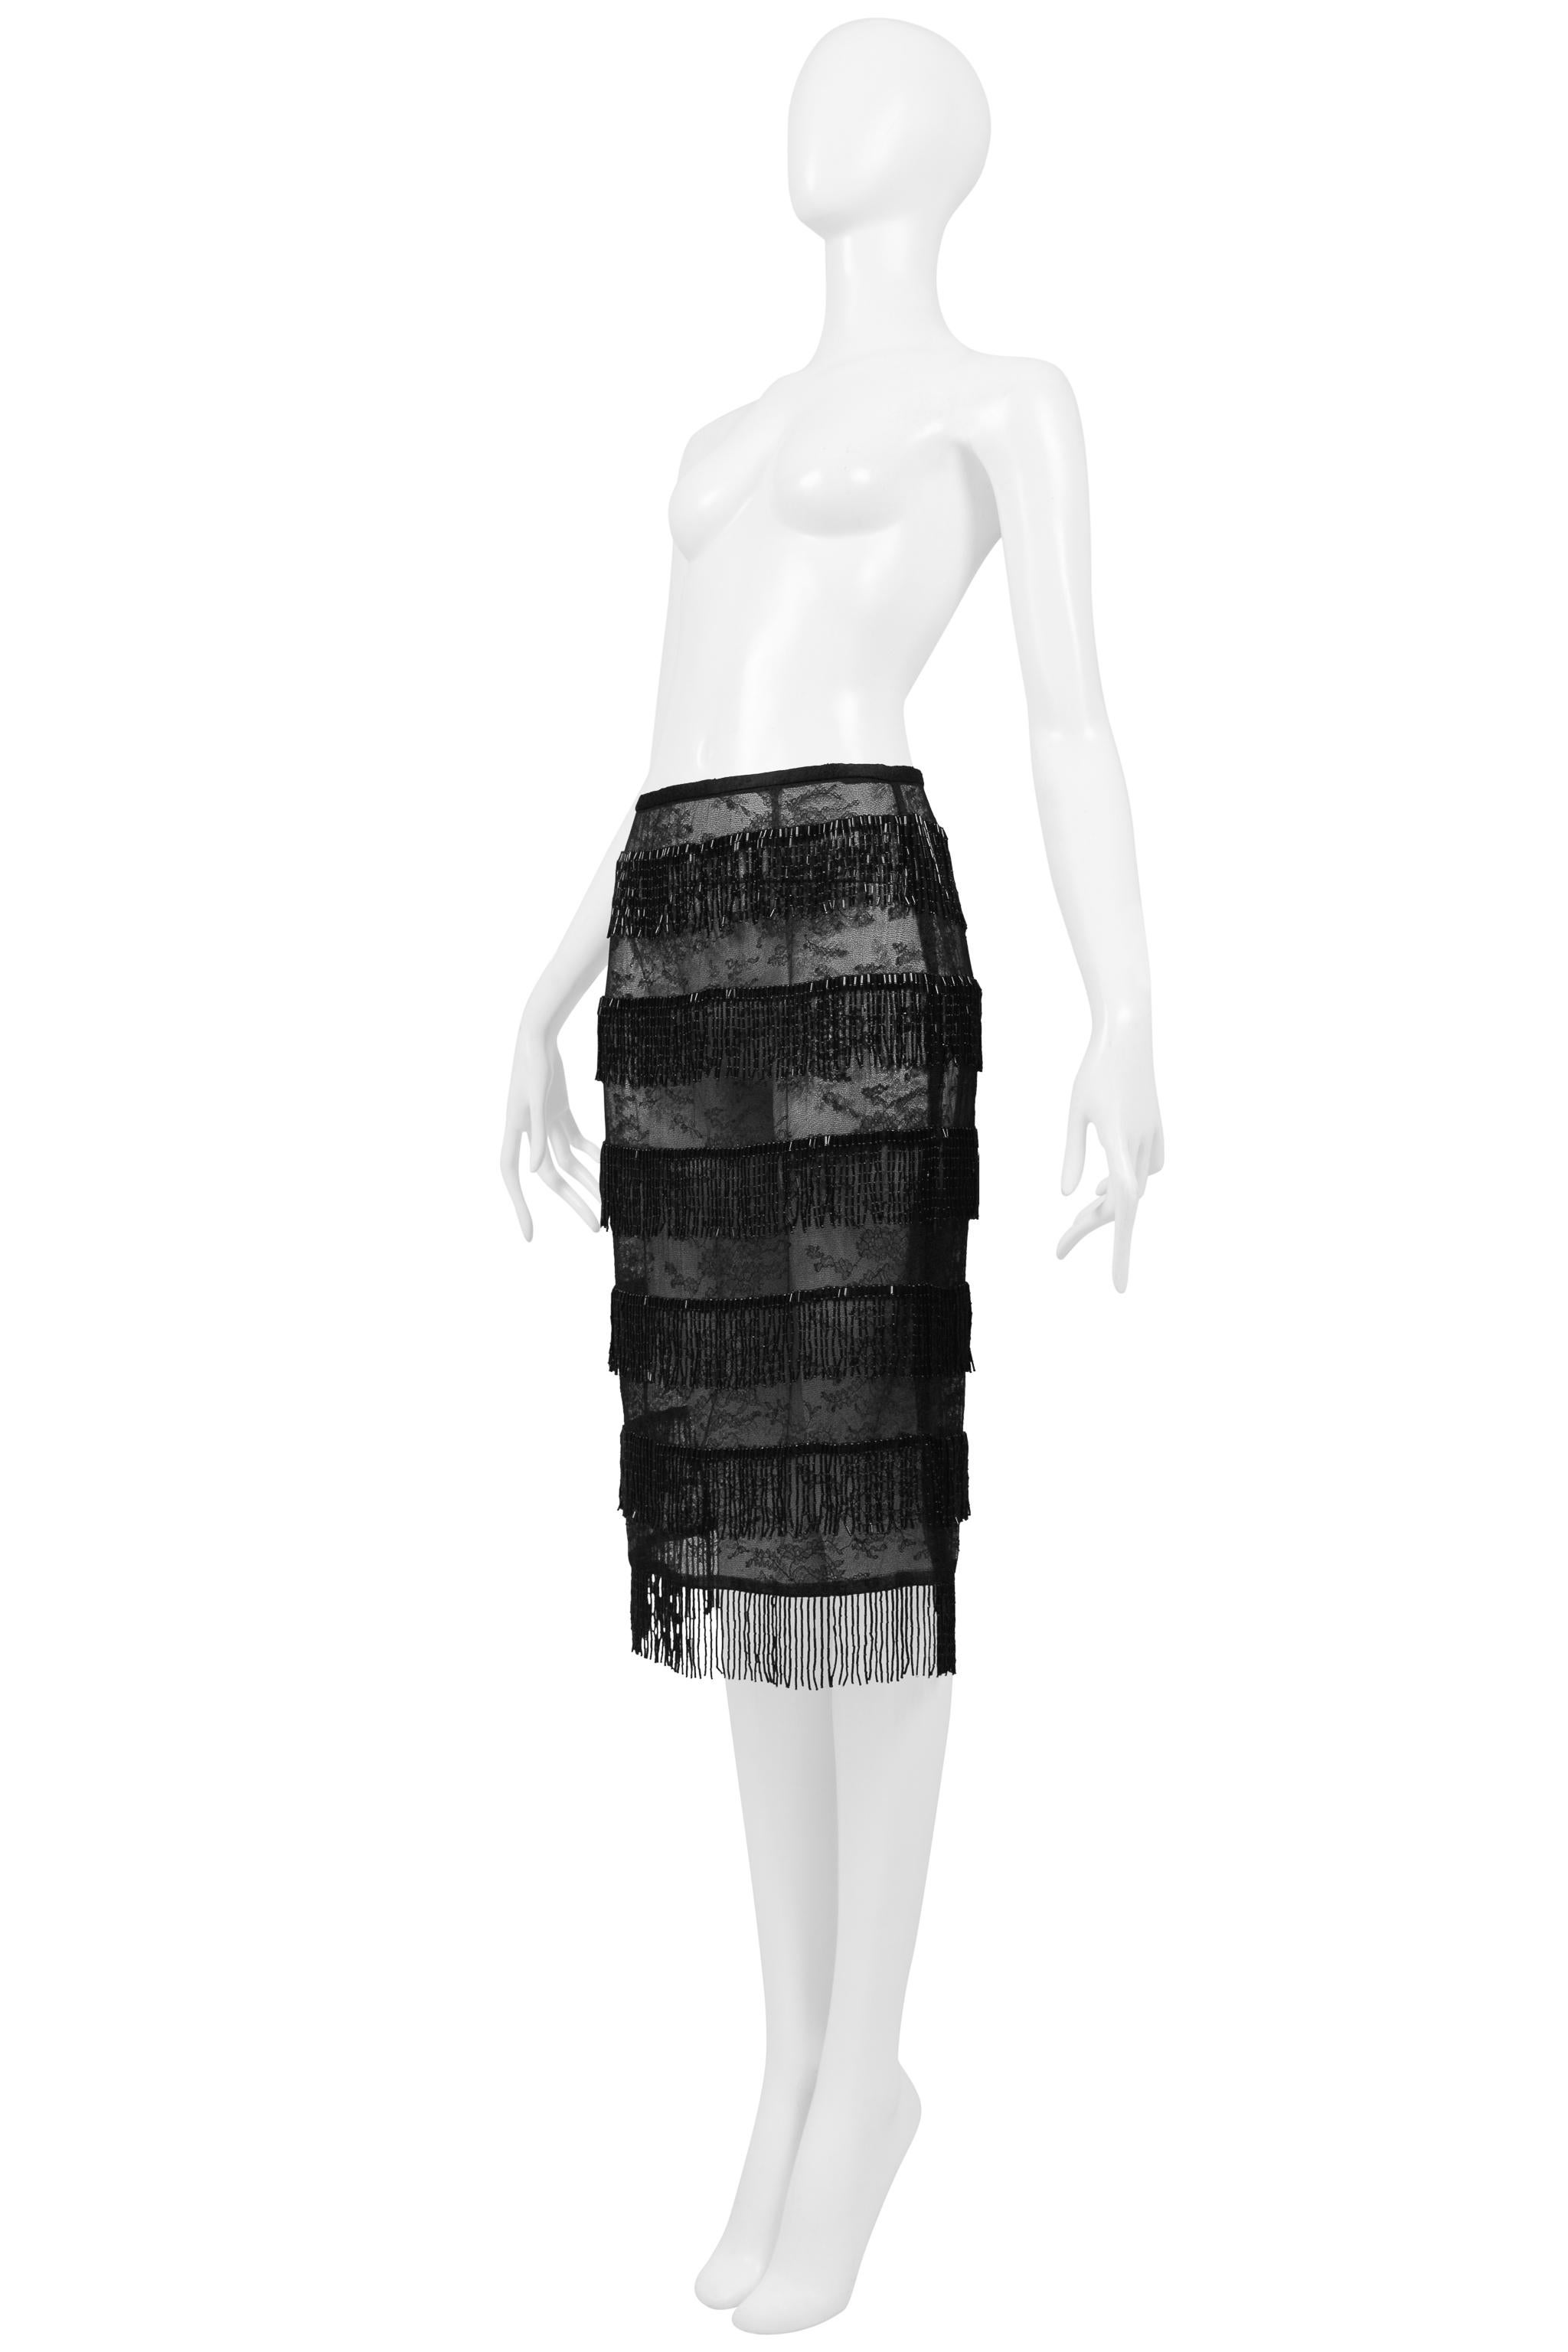 Dolce & Gabbana Black Sheer Skirt With Beaded Fringe SS 2000 For Sale 3